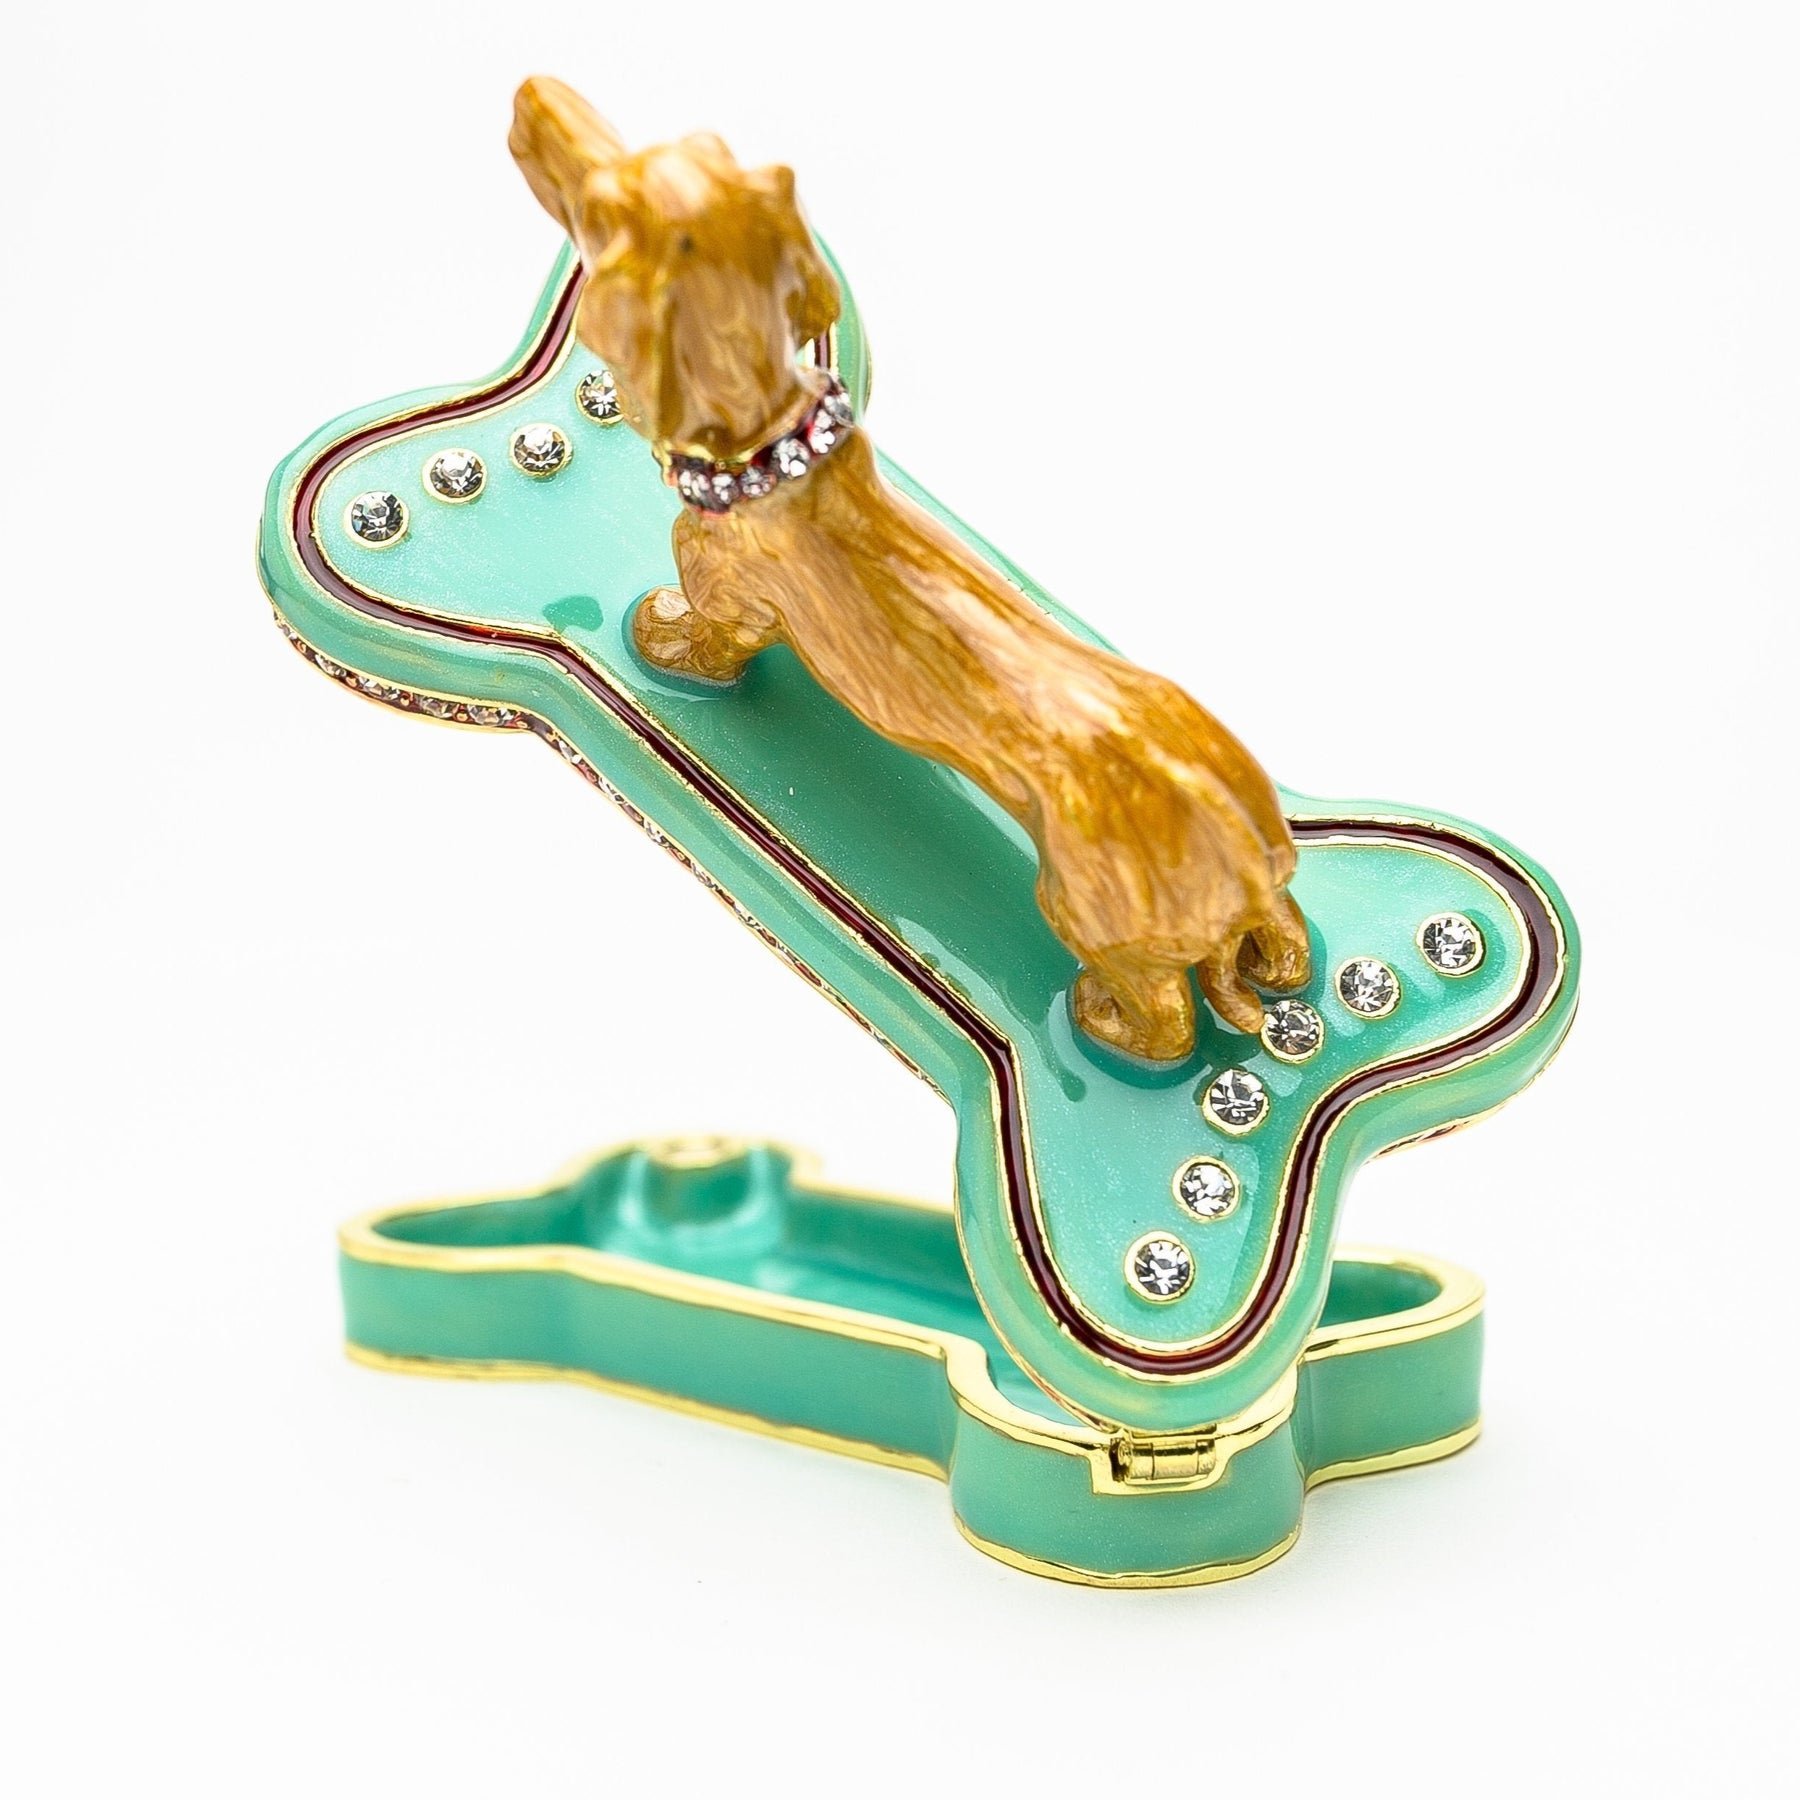 Dachshund Dog Sitting on Bone trinket box Keren Kopal